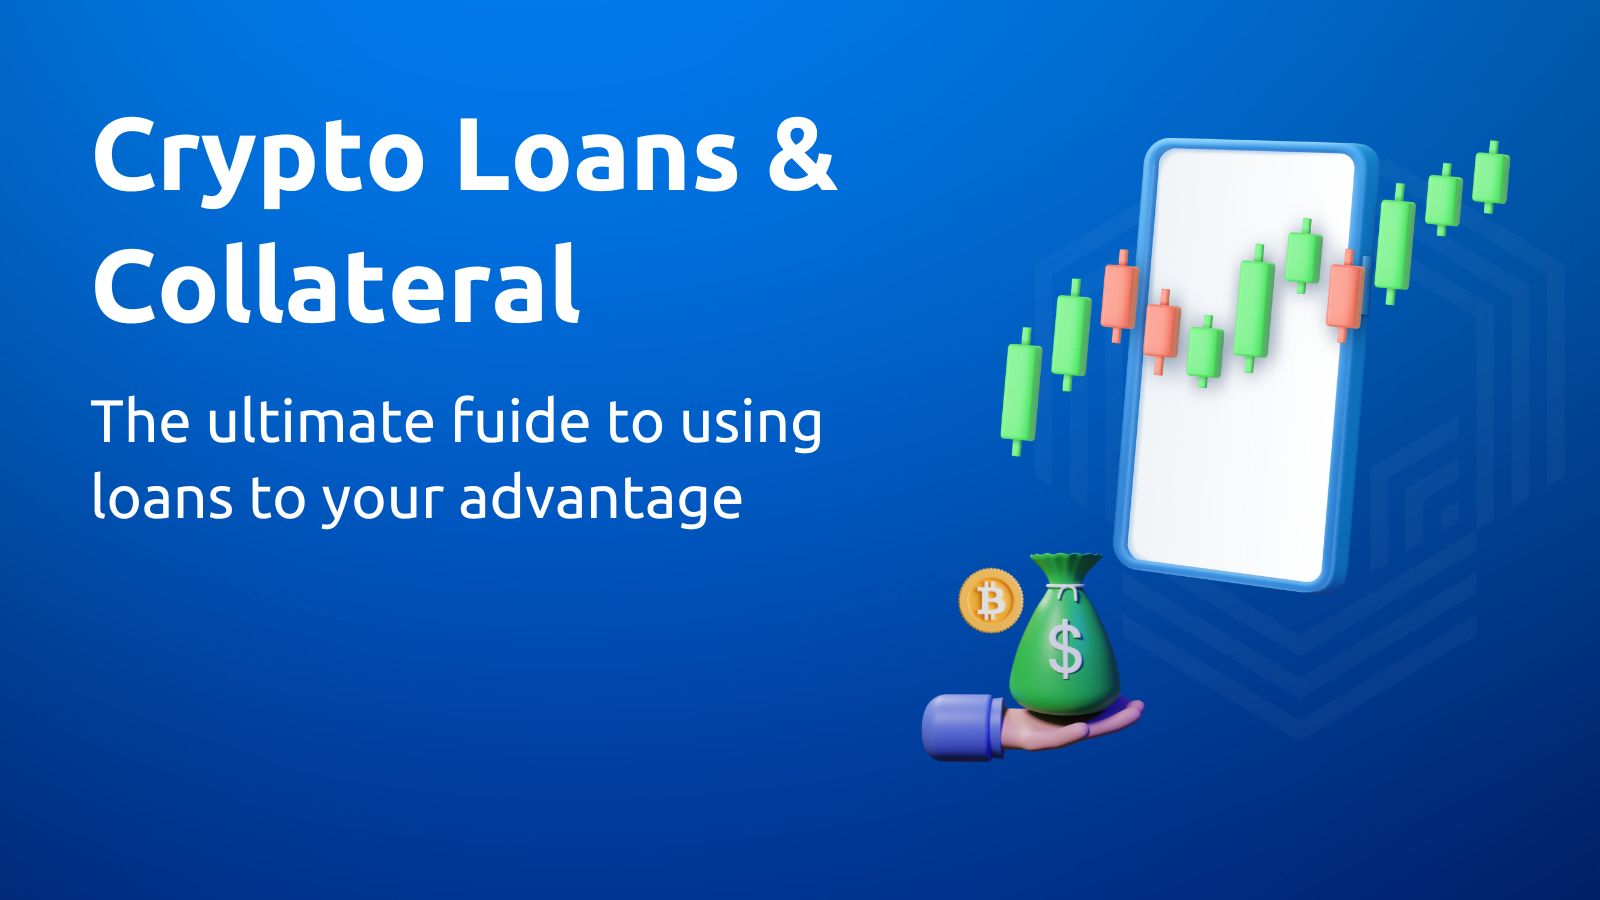 How Do Crypto Loans Work? - NerdWallet